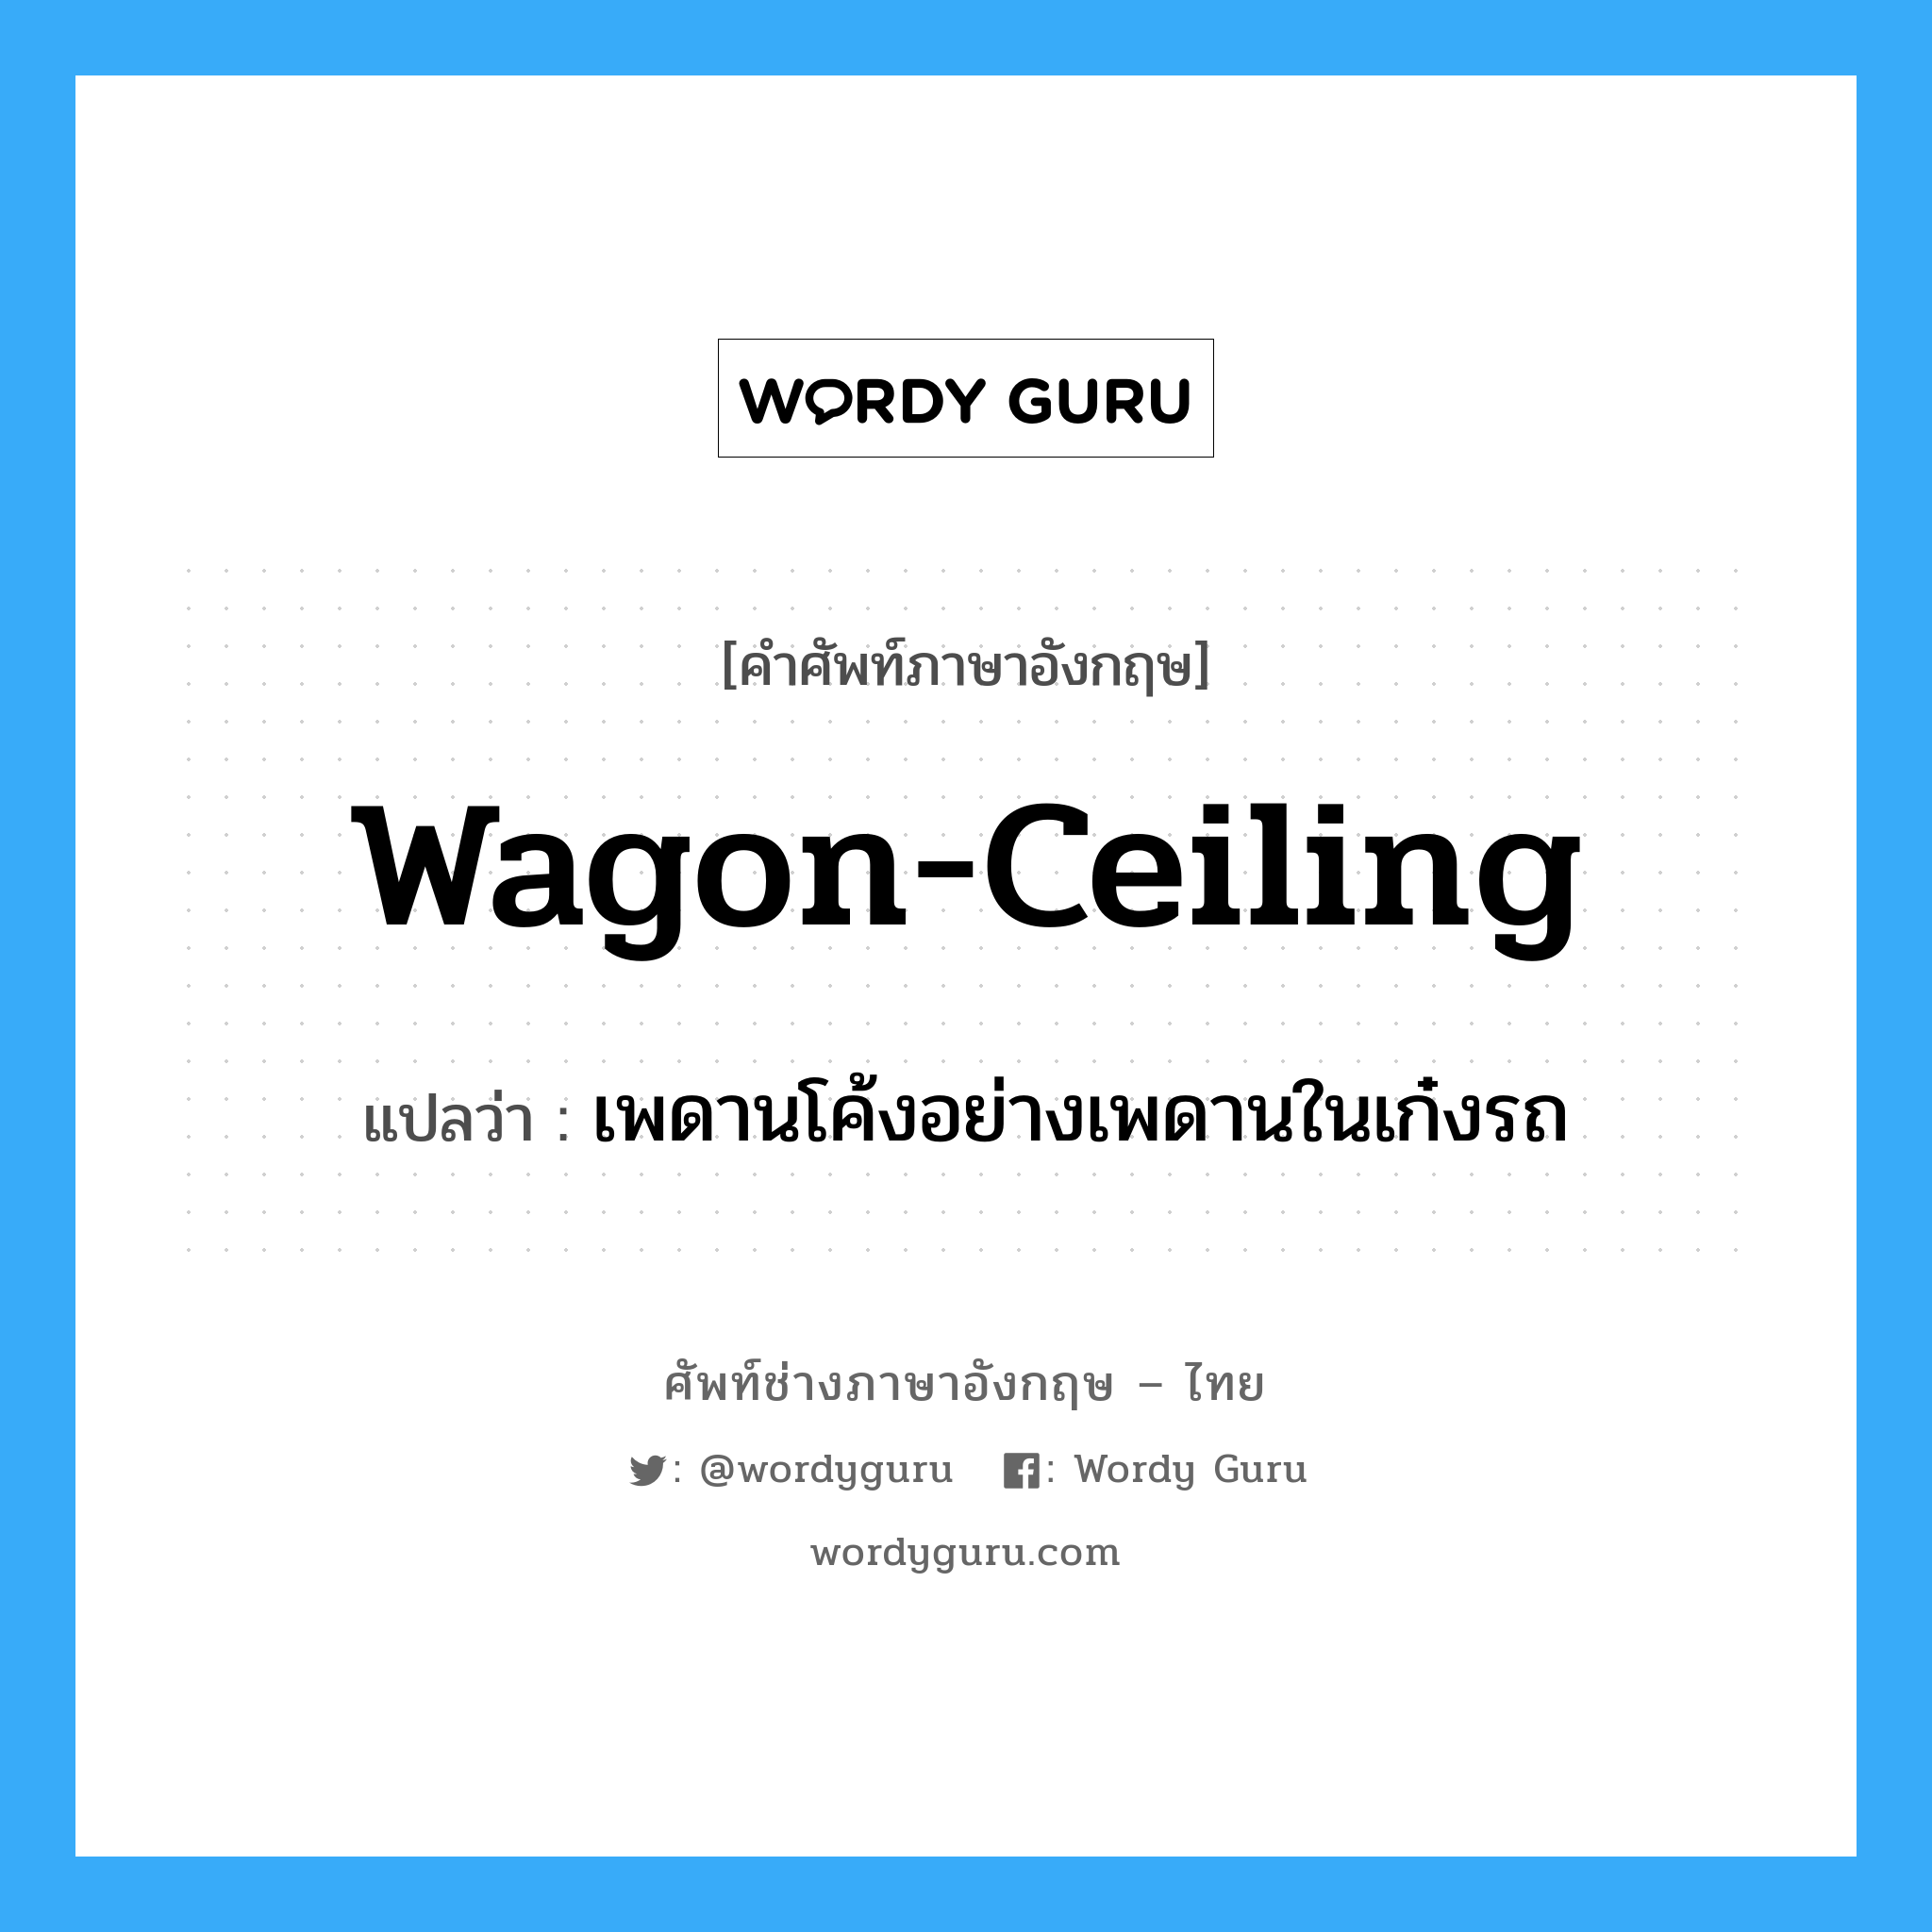 wagon-ceiling แปลว่า?, คำศัพท์ช่างภาษาอังกฤษ - ไทย wagon-ceiling คำศัพท์ภาษาอังกฤษ wagon-ceiling แปลว่า เพดานโค้งอย่างเพดานในเก๋งรถ